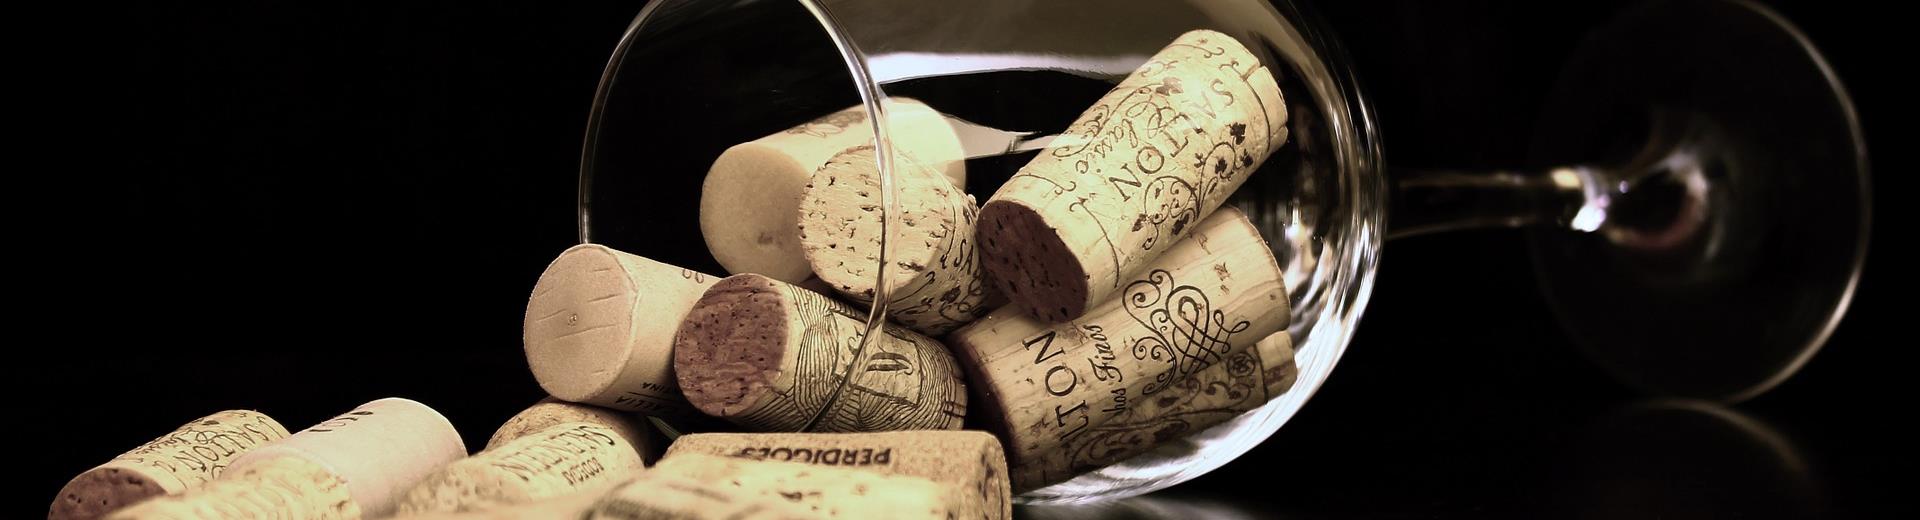 L''evento di degustazione vino, cibo e musica ti aspetta ad Ardesio: soggiorna al Hotel Cappello d''Oro